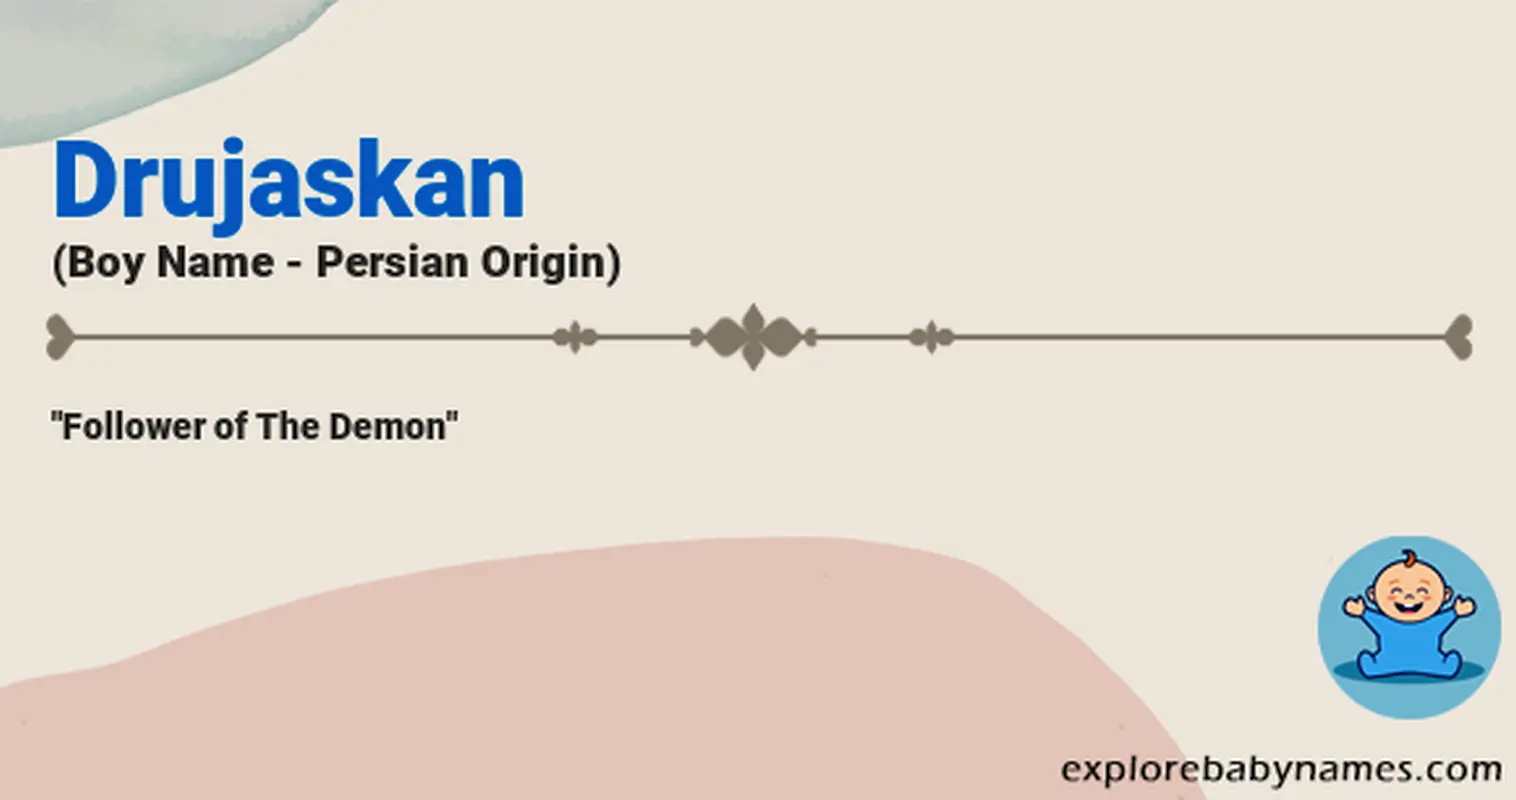 Meaning of Drujaskan